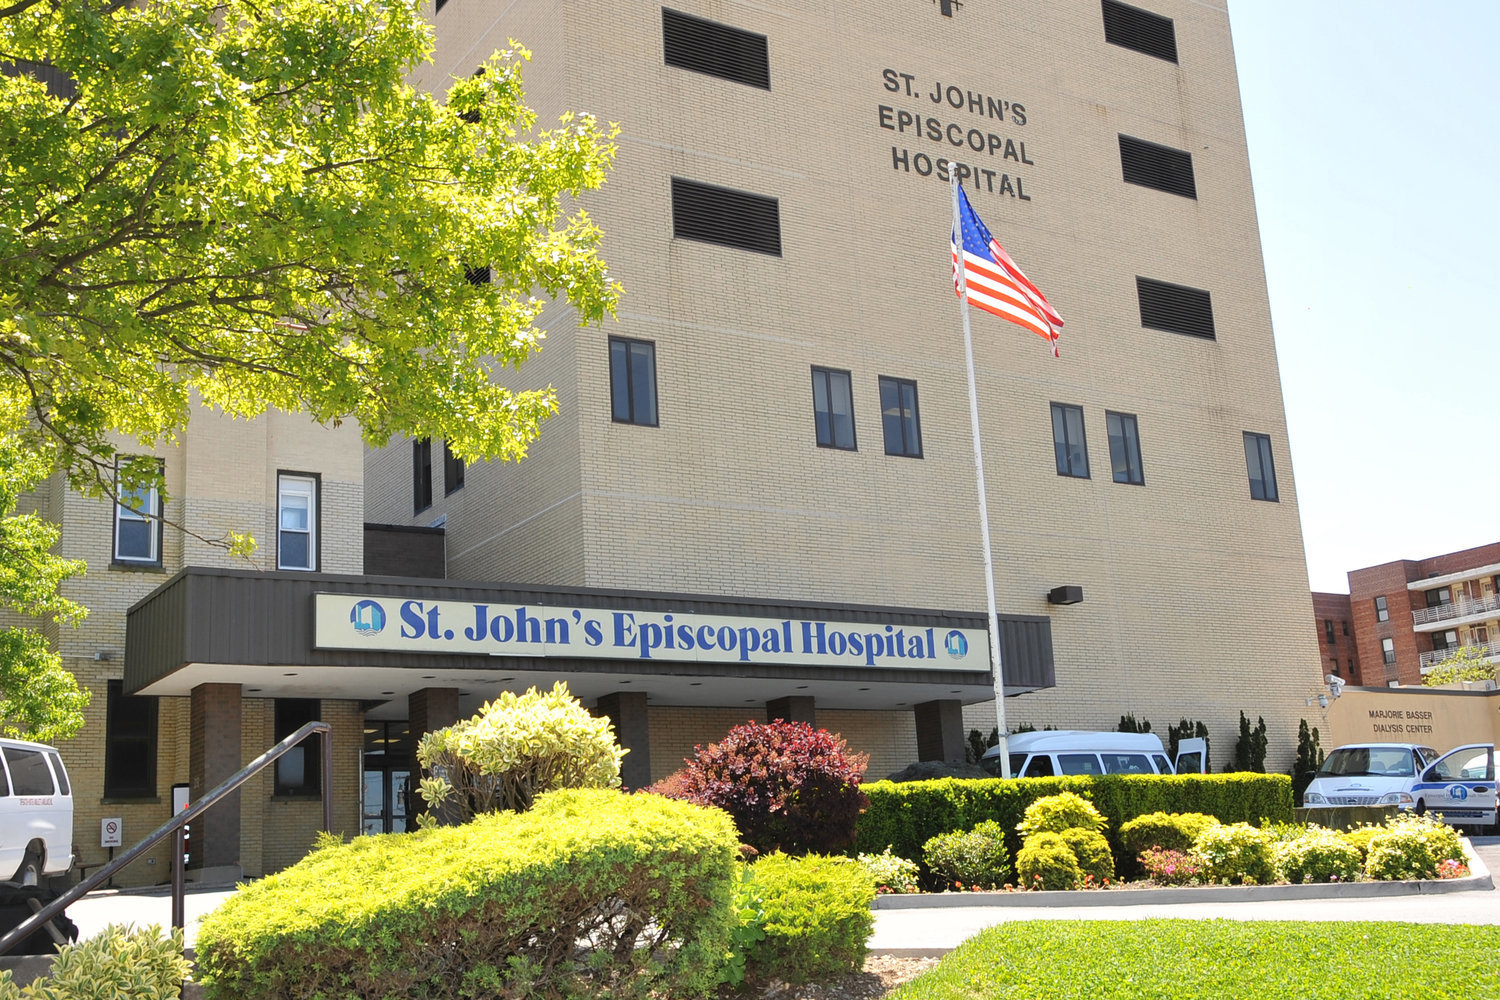 St. John’s Episcopal Hospital in Far Rockaway.